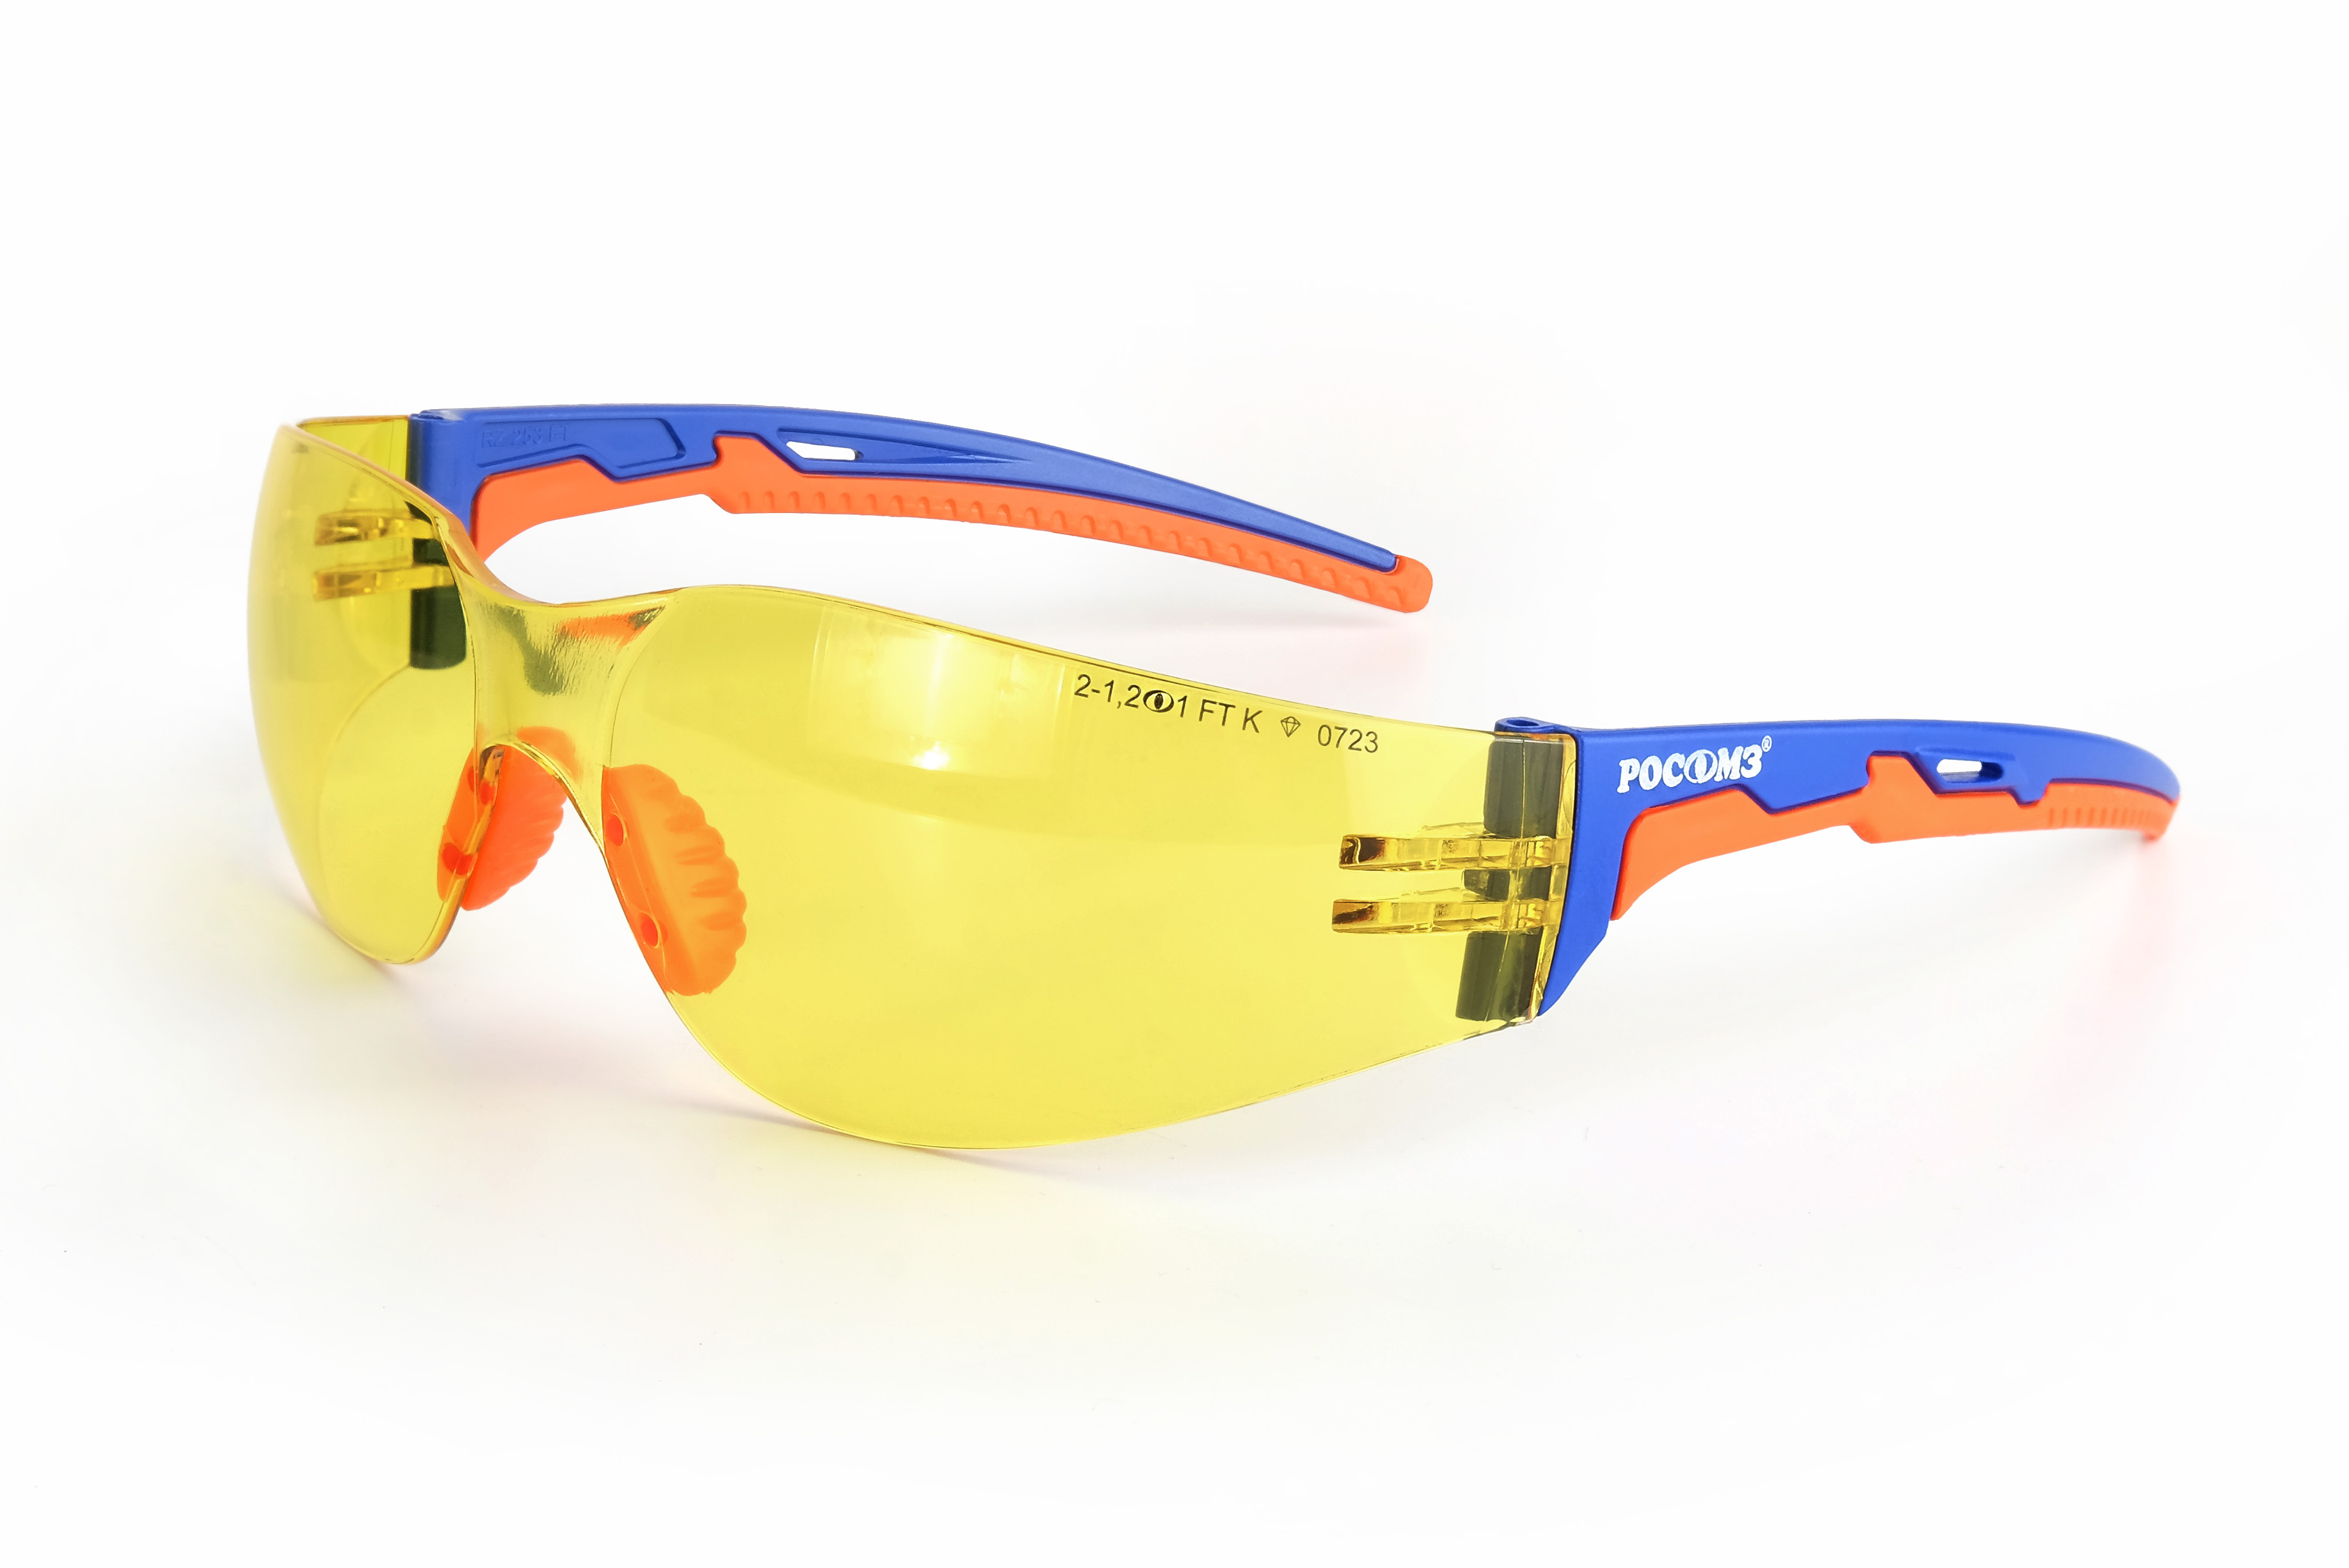 О15 HAMMER ACTIVЕ АЛМАЗ (2-1,2 PC) очки защитные открытые с мягким носоупором